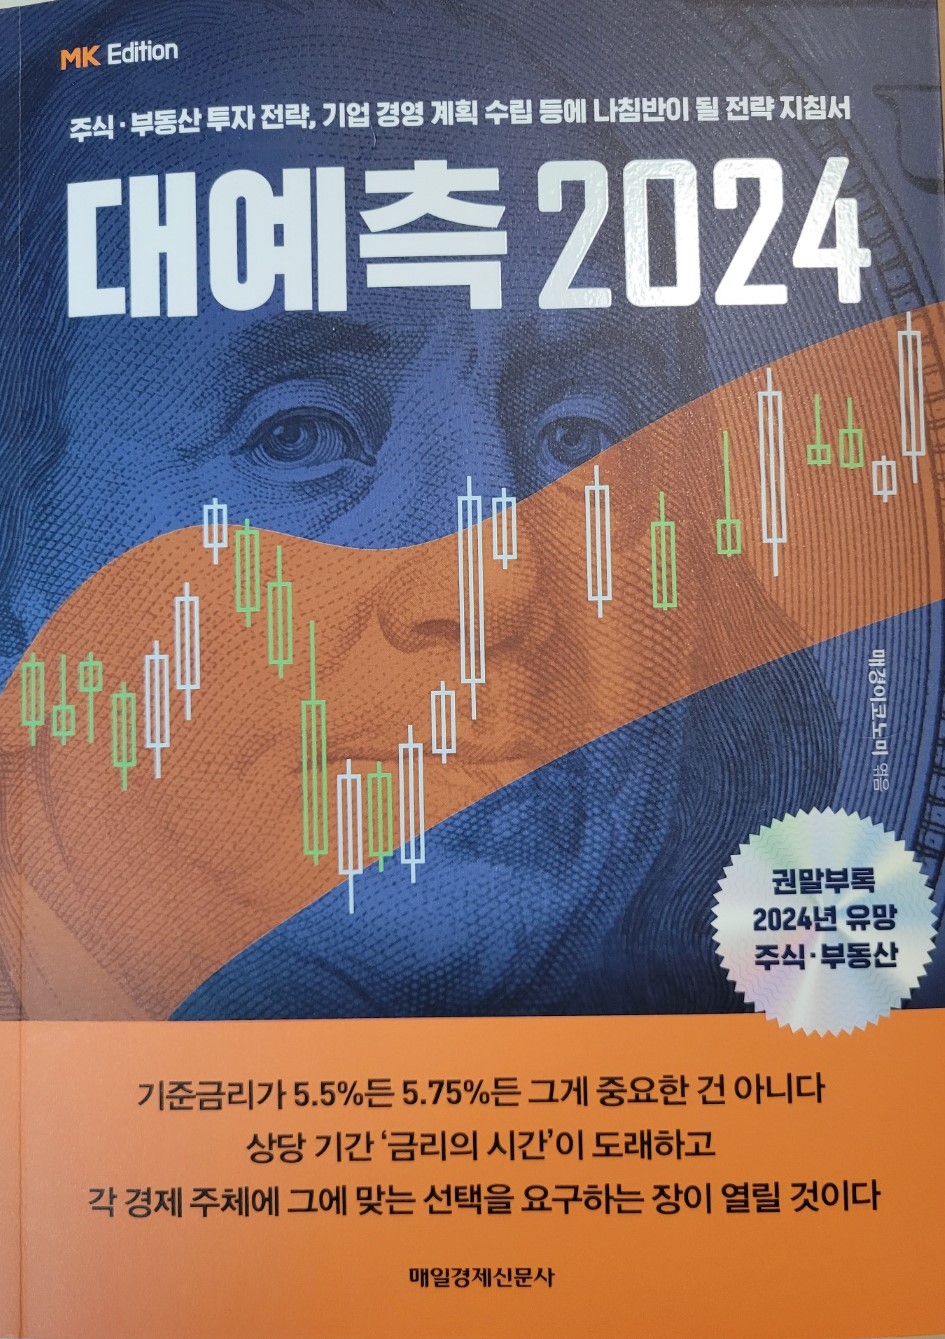 투자자 꼭 봐야 하는 경제 책 리뷰 - 매일경제 매경이코노미 MK에디션 대예측 2024